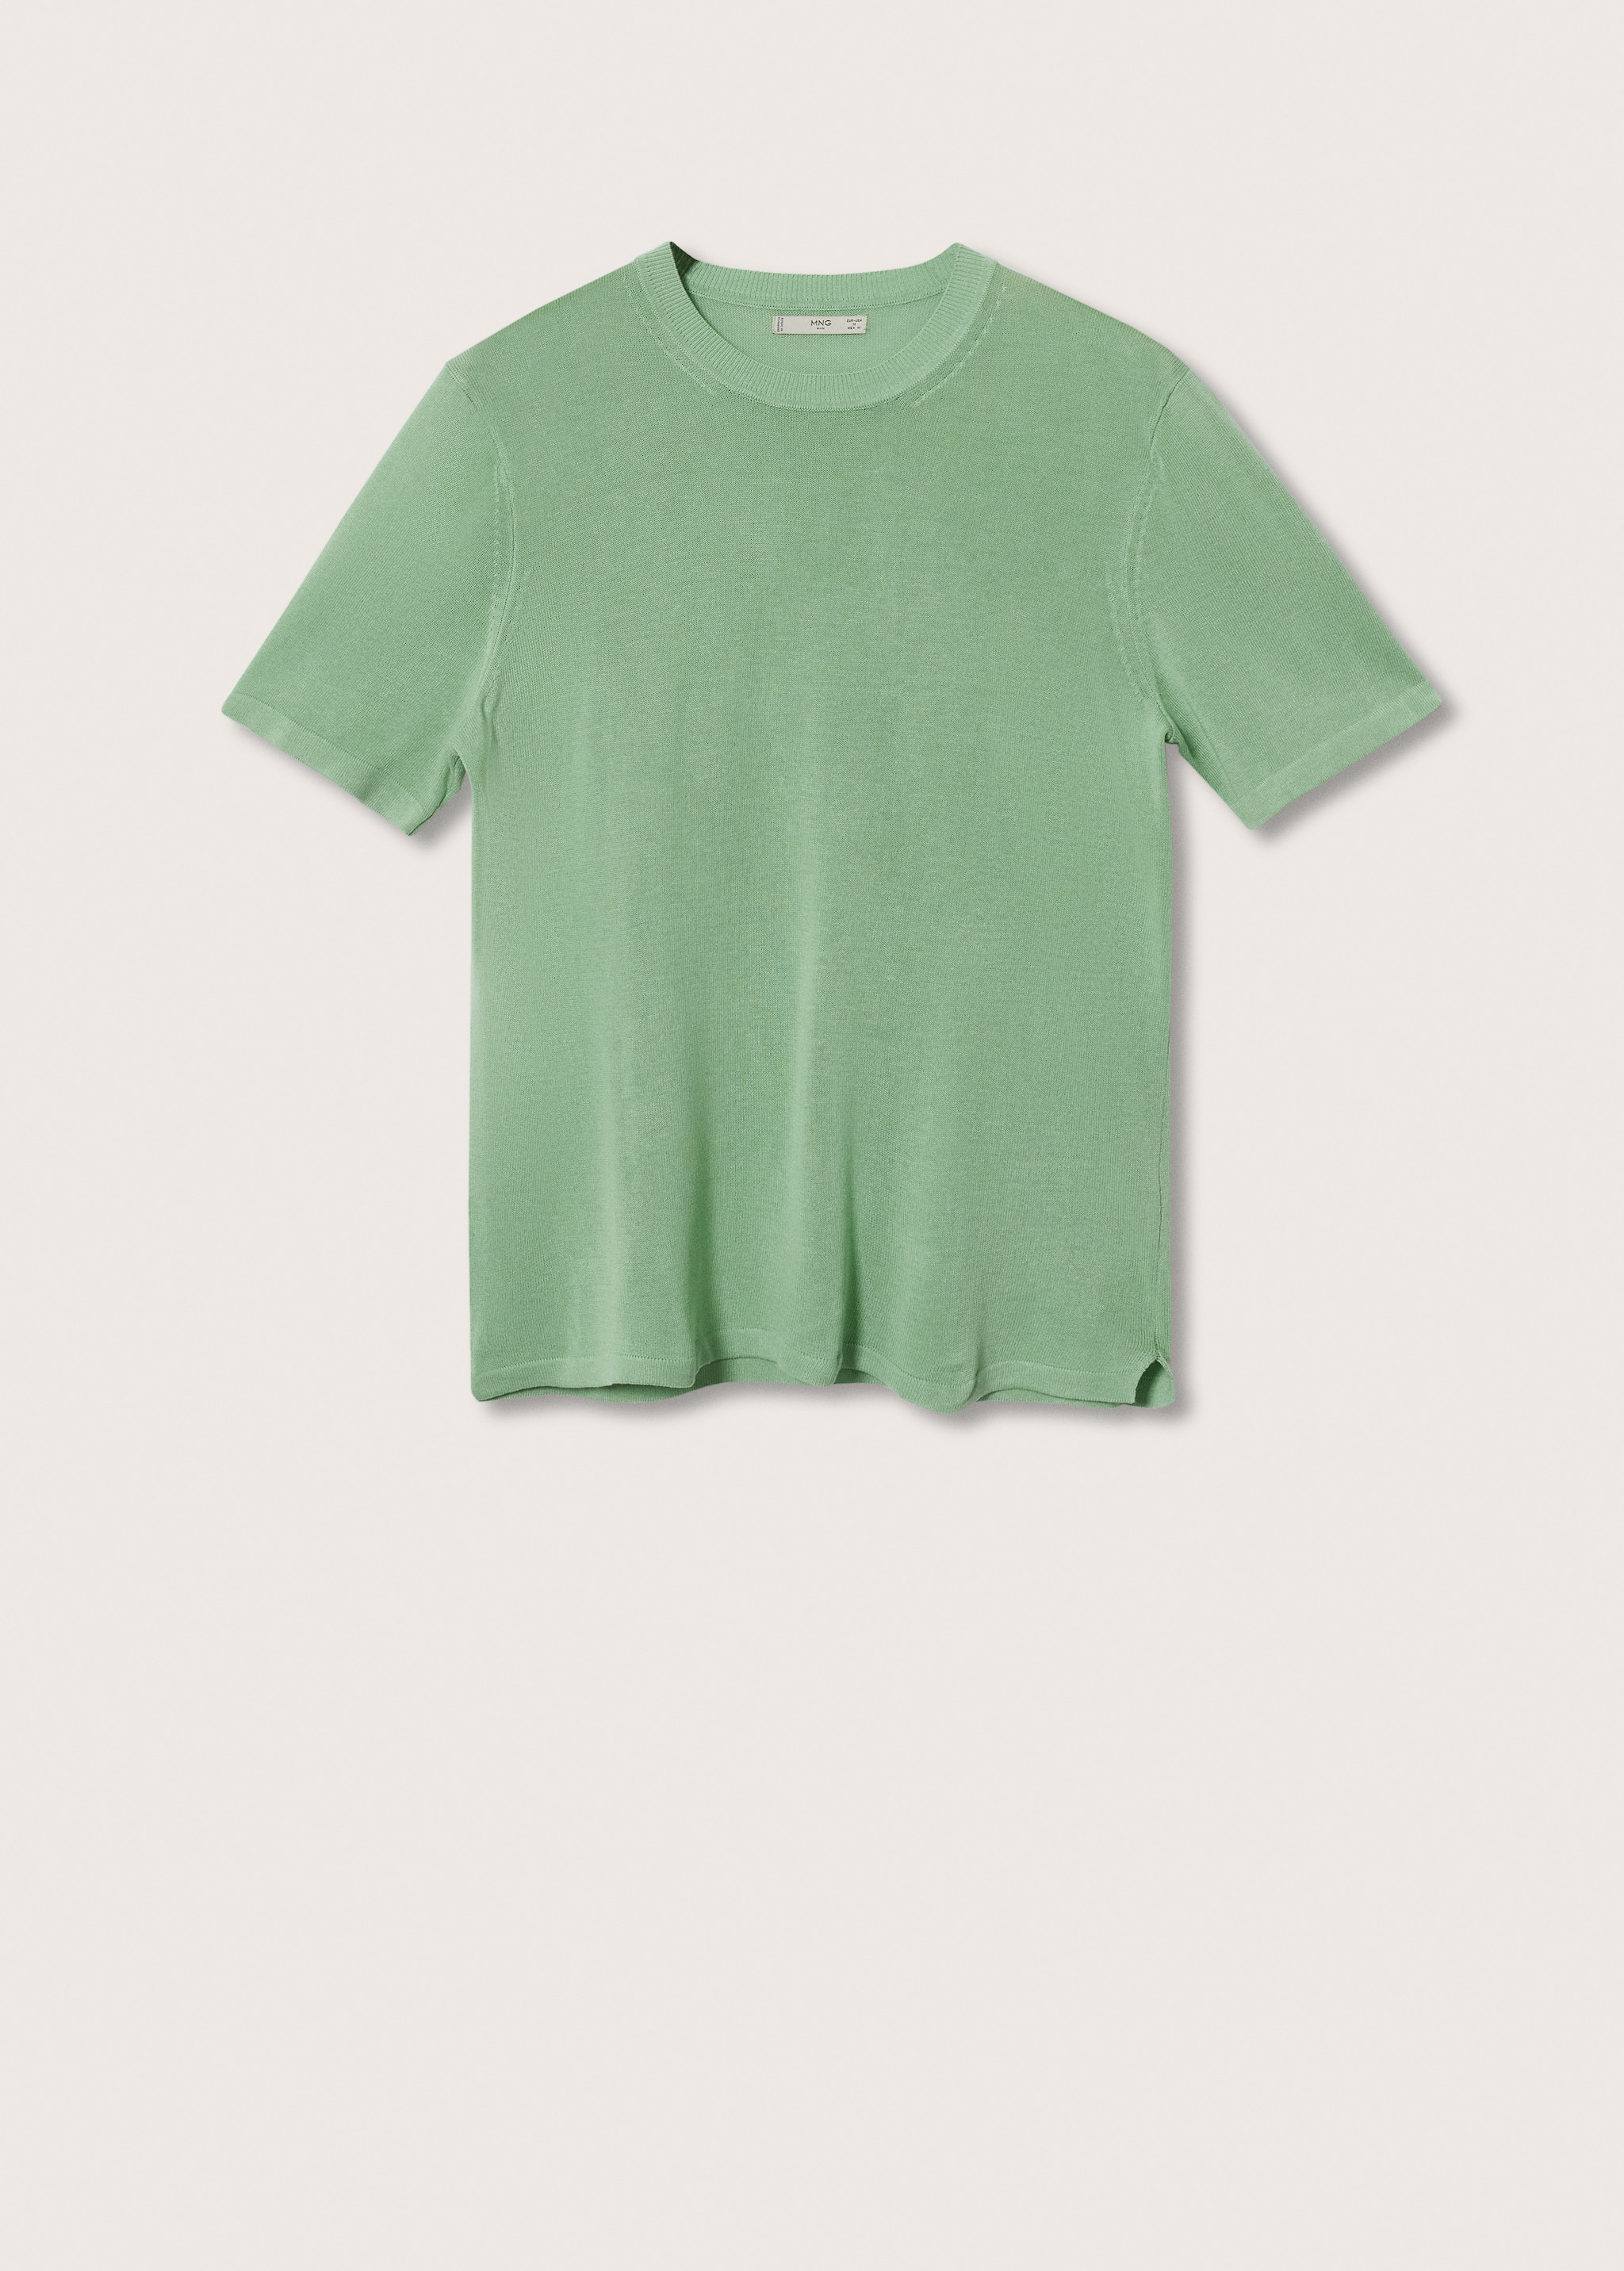 Camiseta punto lino - Artículo sin modelo